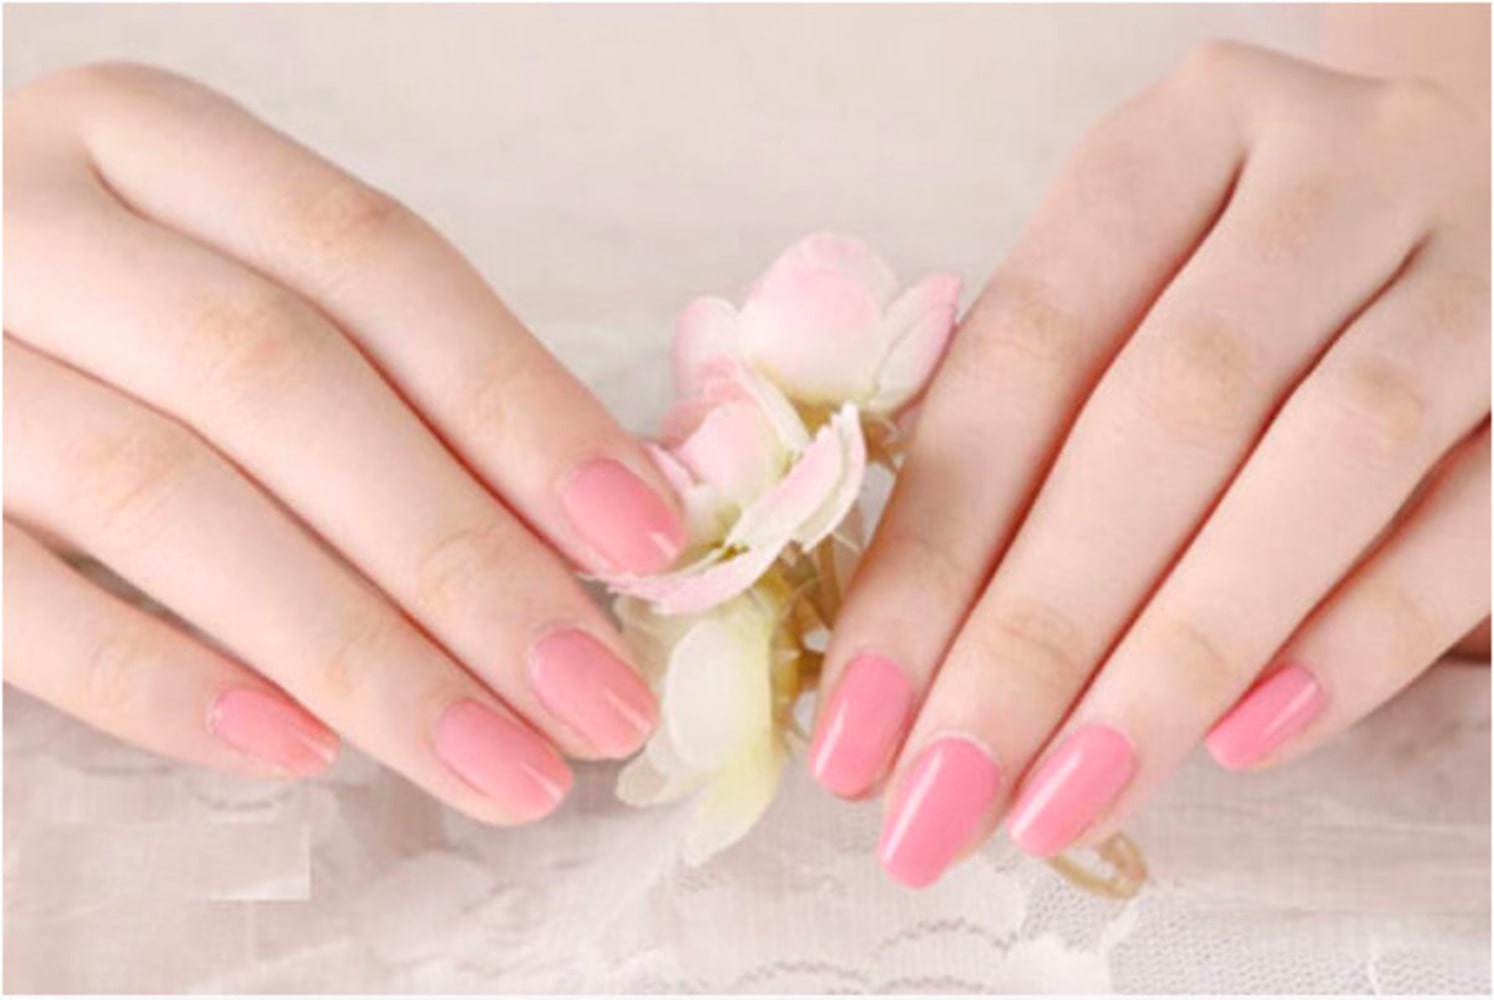 Điểm danh những mẫu nail màu hồng siêu hot, nàng nên rủ rê hội bạn triển ngay mùa Tết này